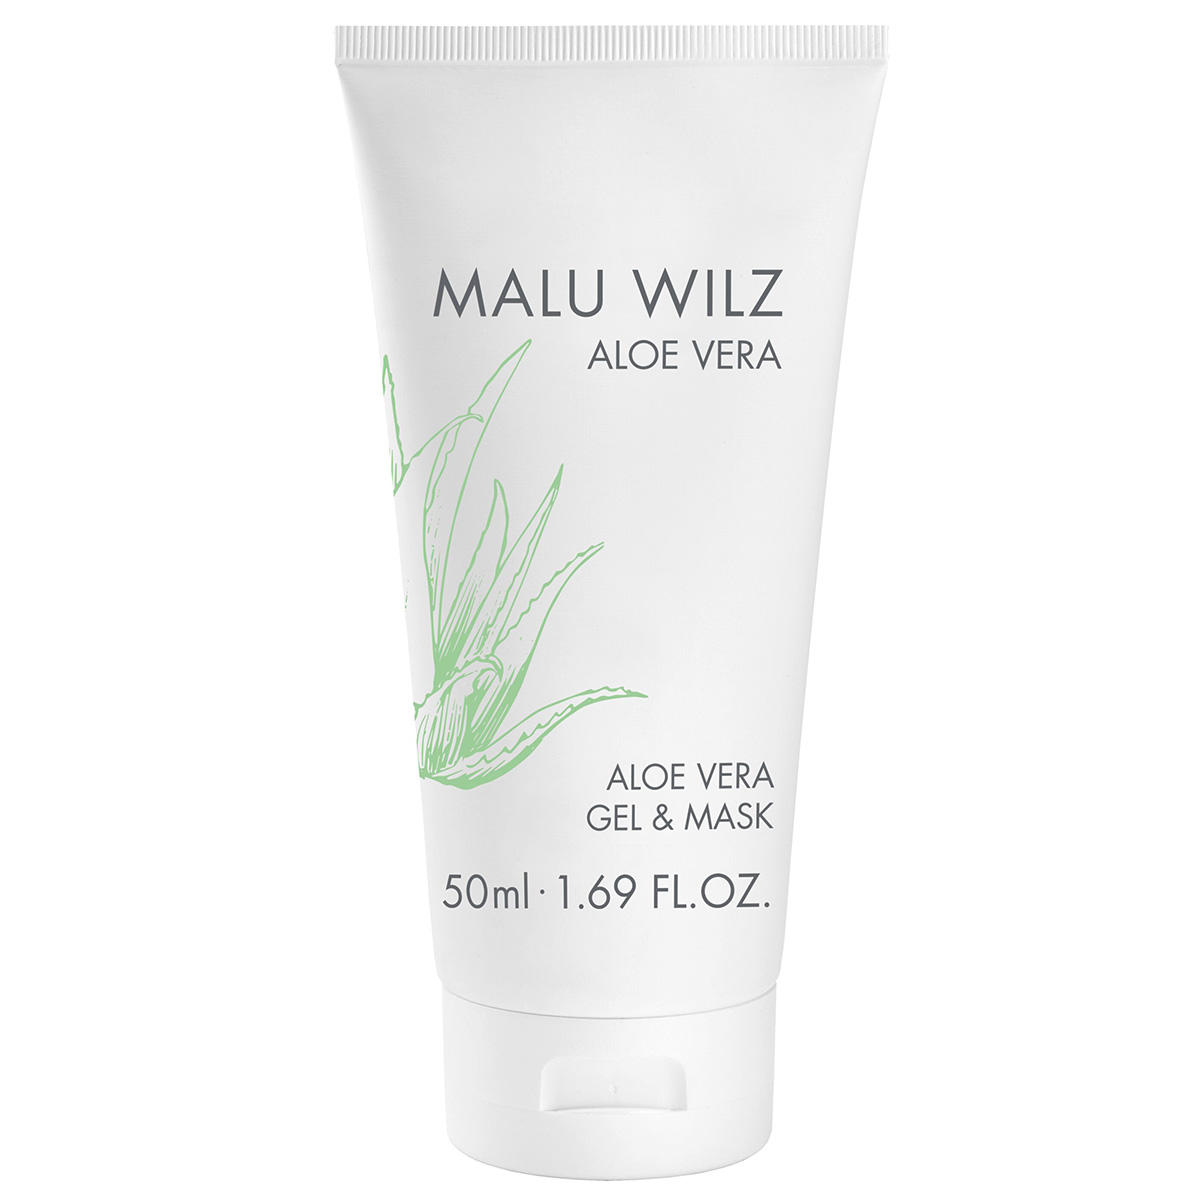 Malu Wilz Aloe Vera GEL & MASK 50 ml - 1